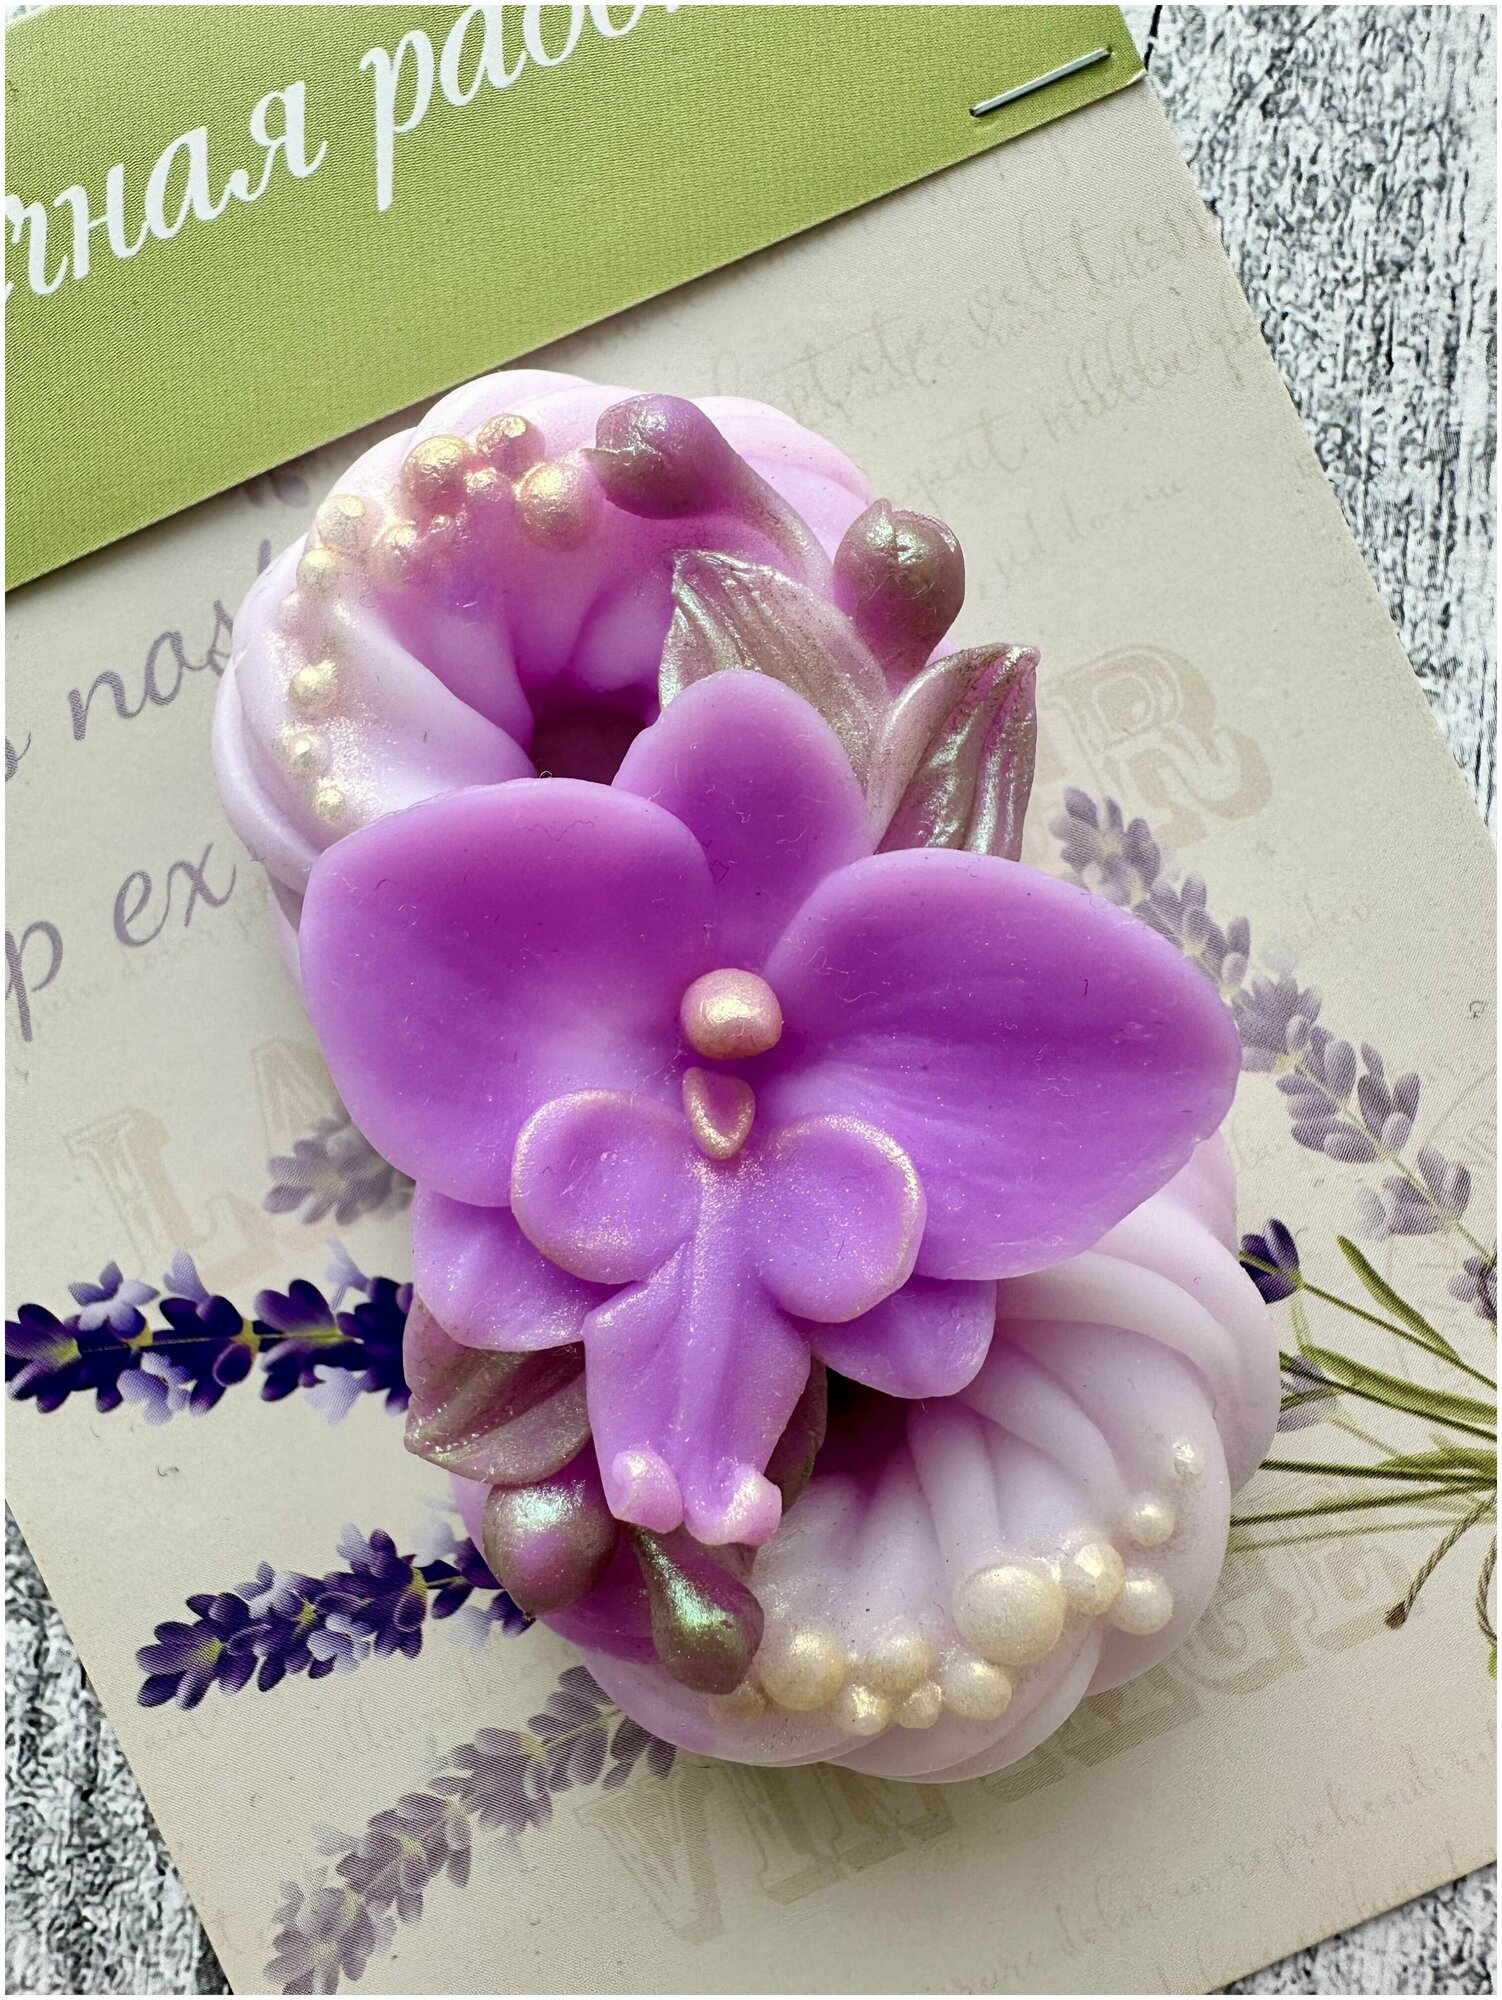 Мыло ручной работы "Восьмерка с орхидеей" / Подарок женщине девушке коллеге на 8 марта / Сюрприз на день рождения